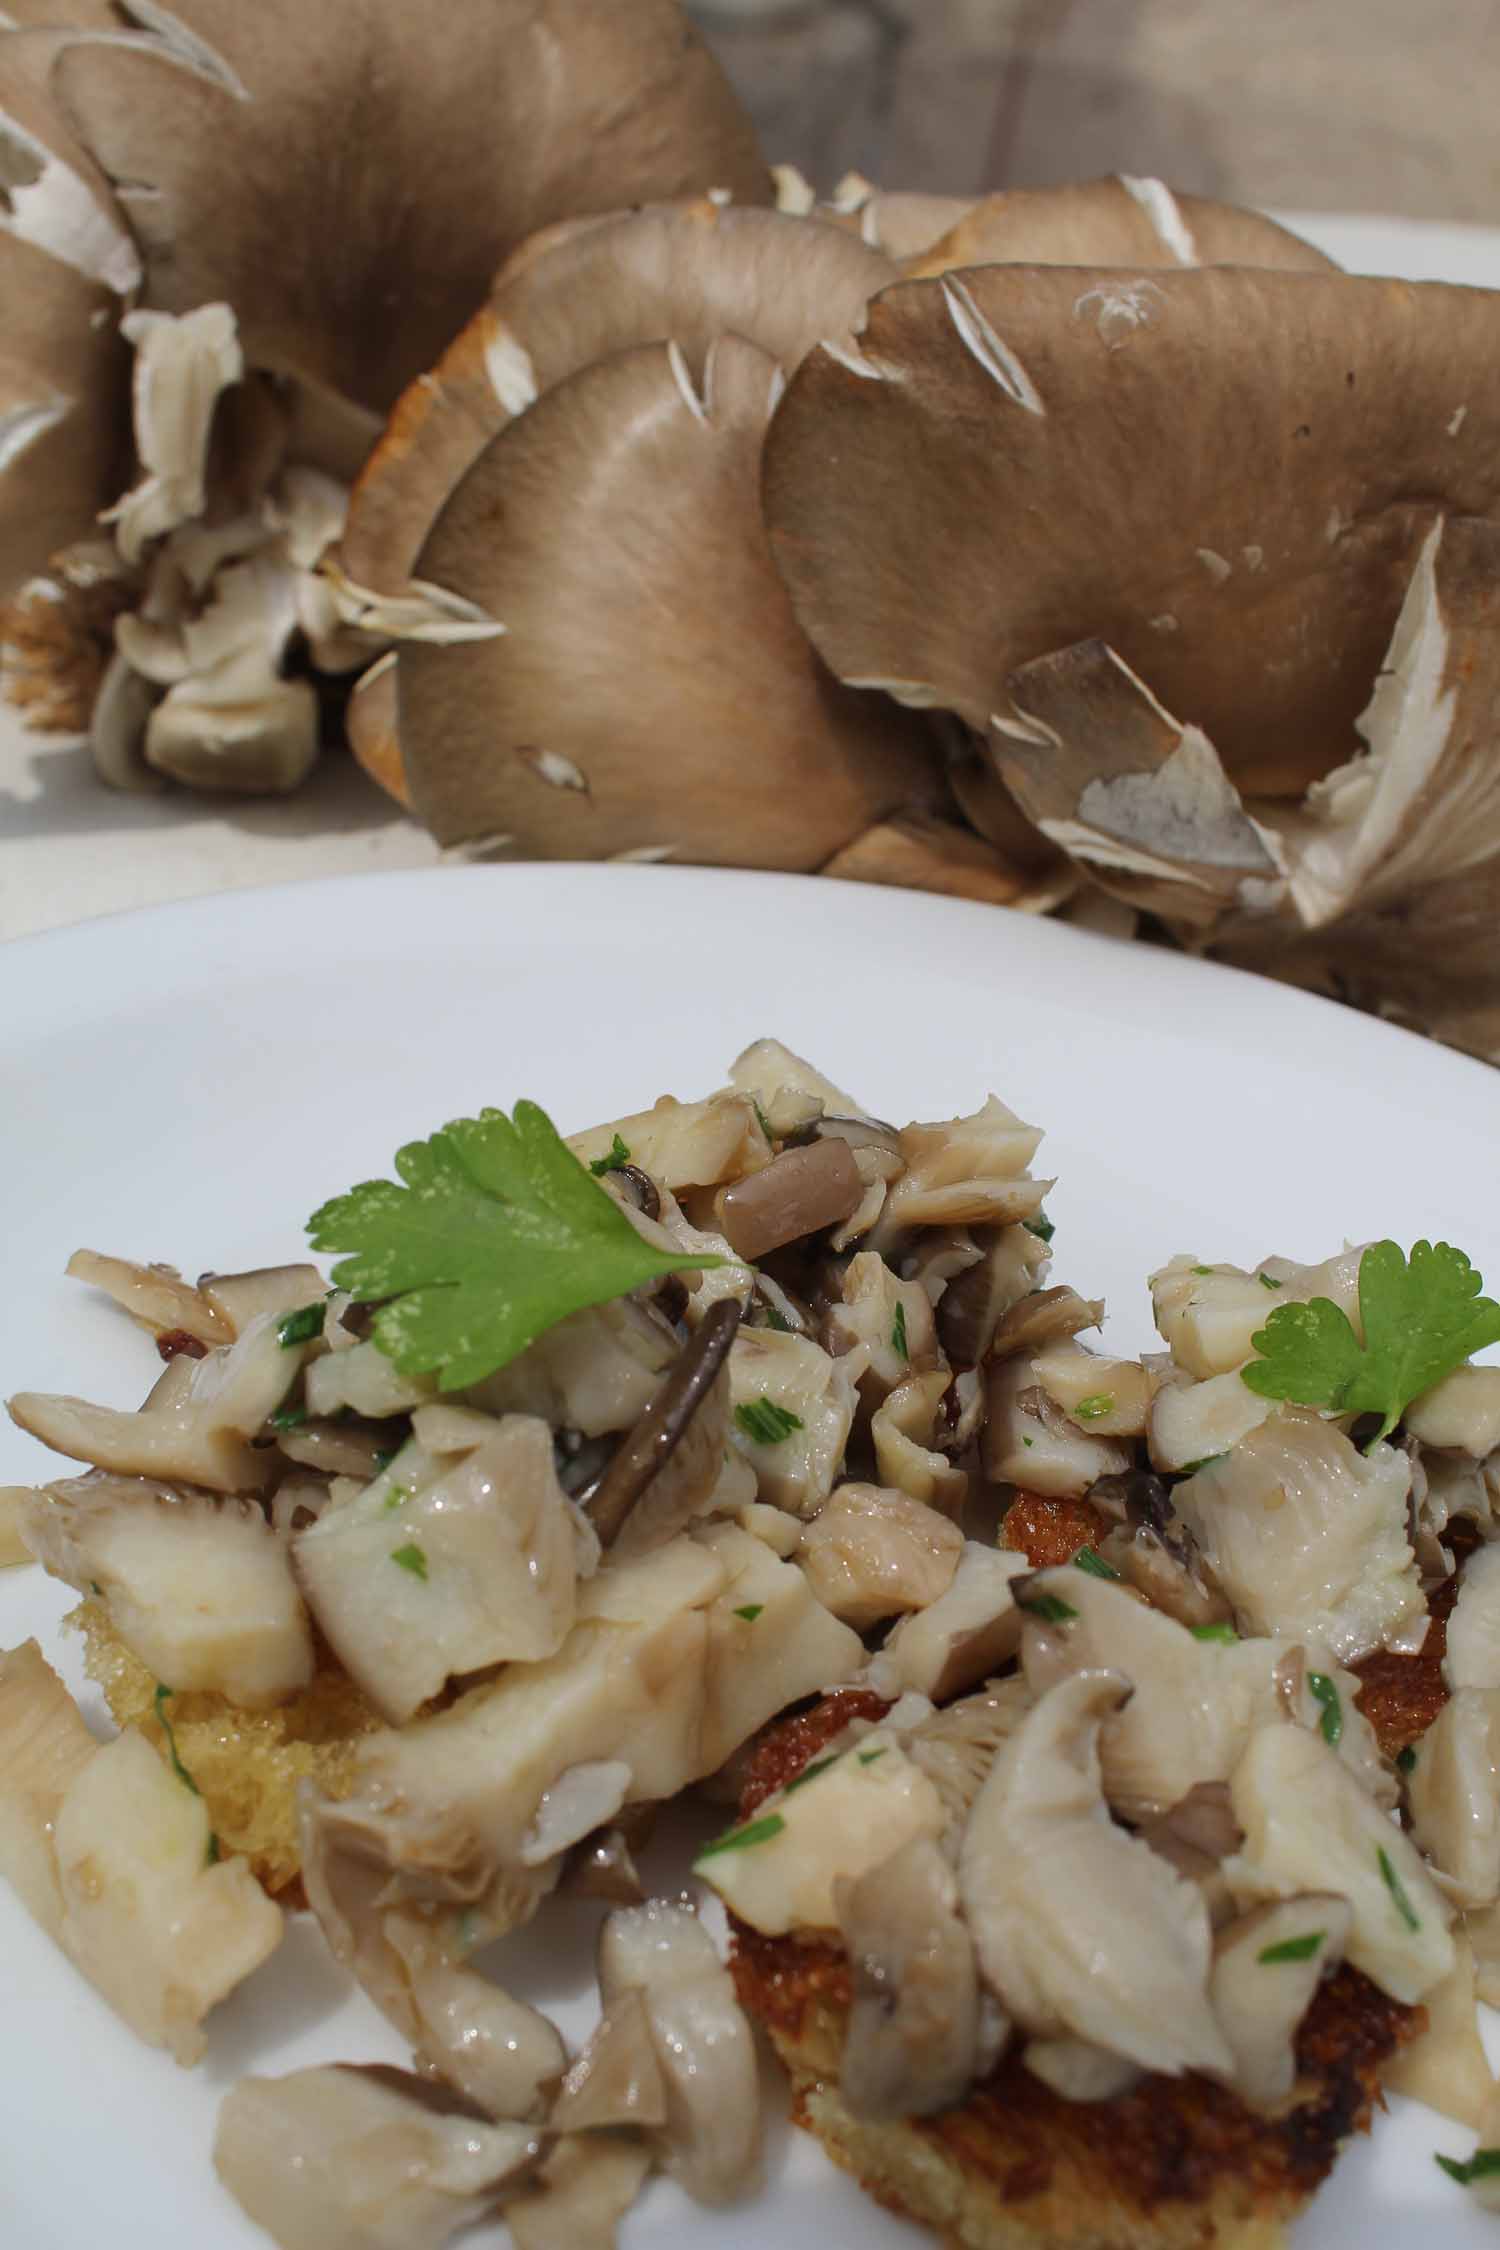 Oyster mushroom bruschette